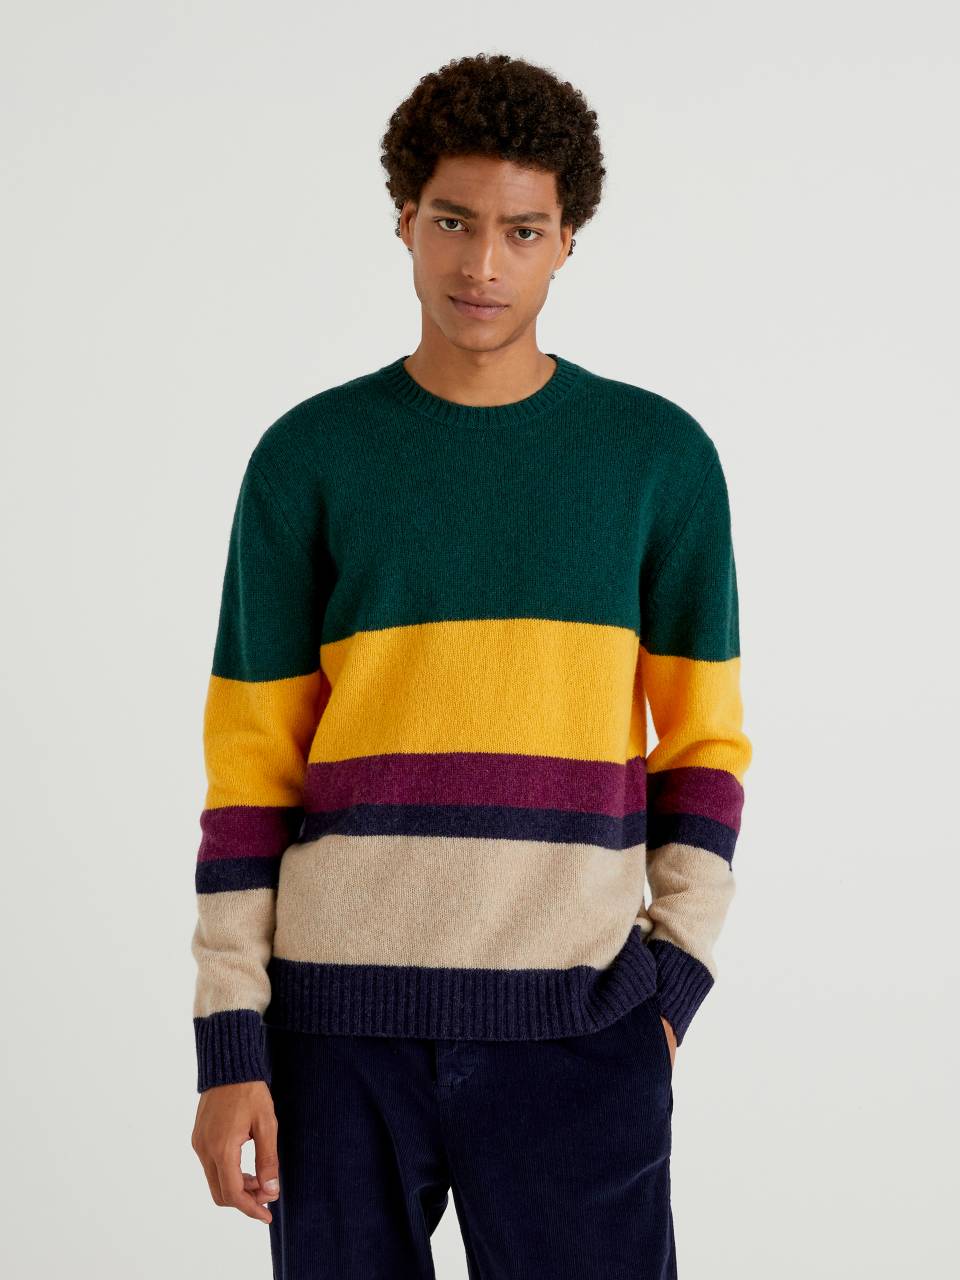 GB Multi Colored Striped Sweater